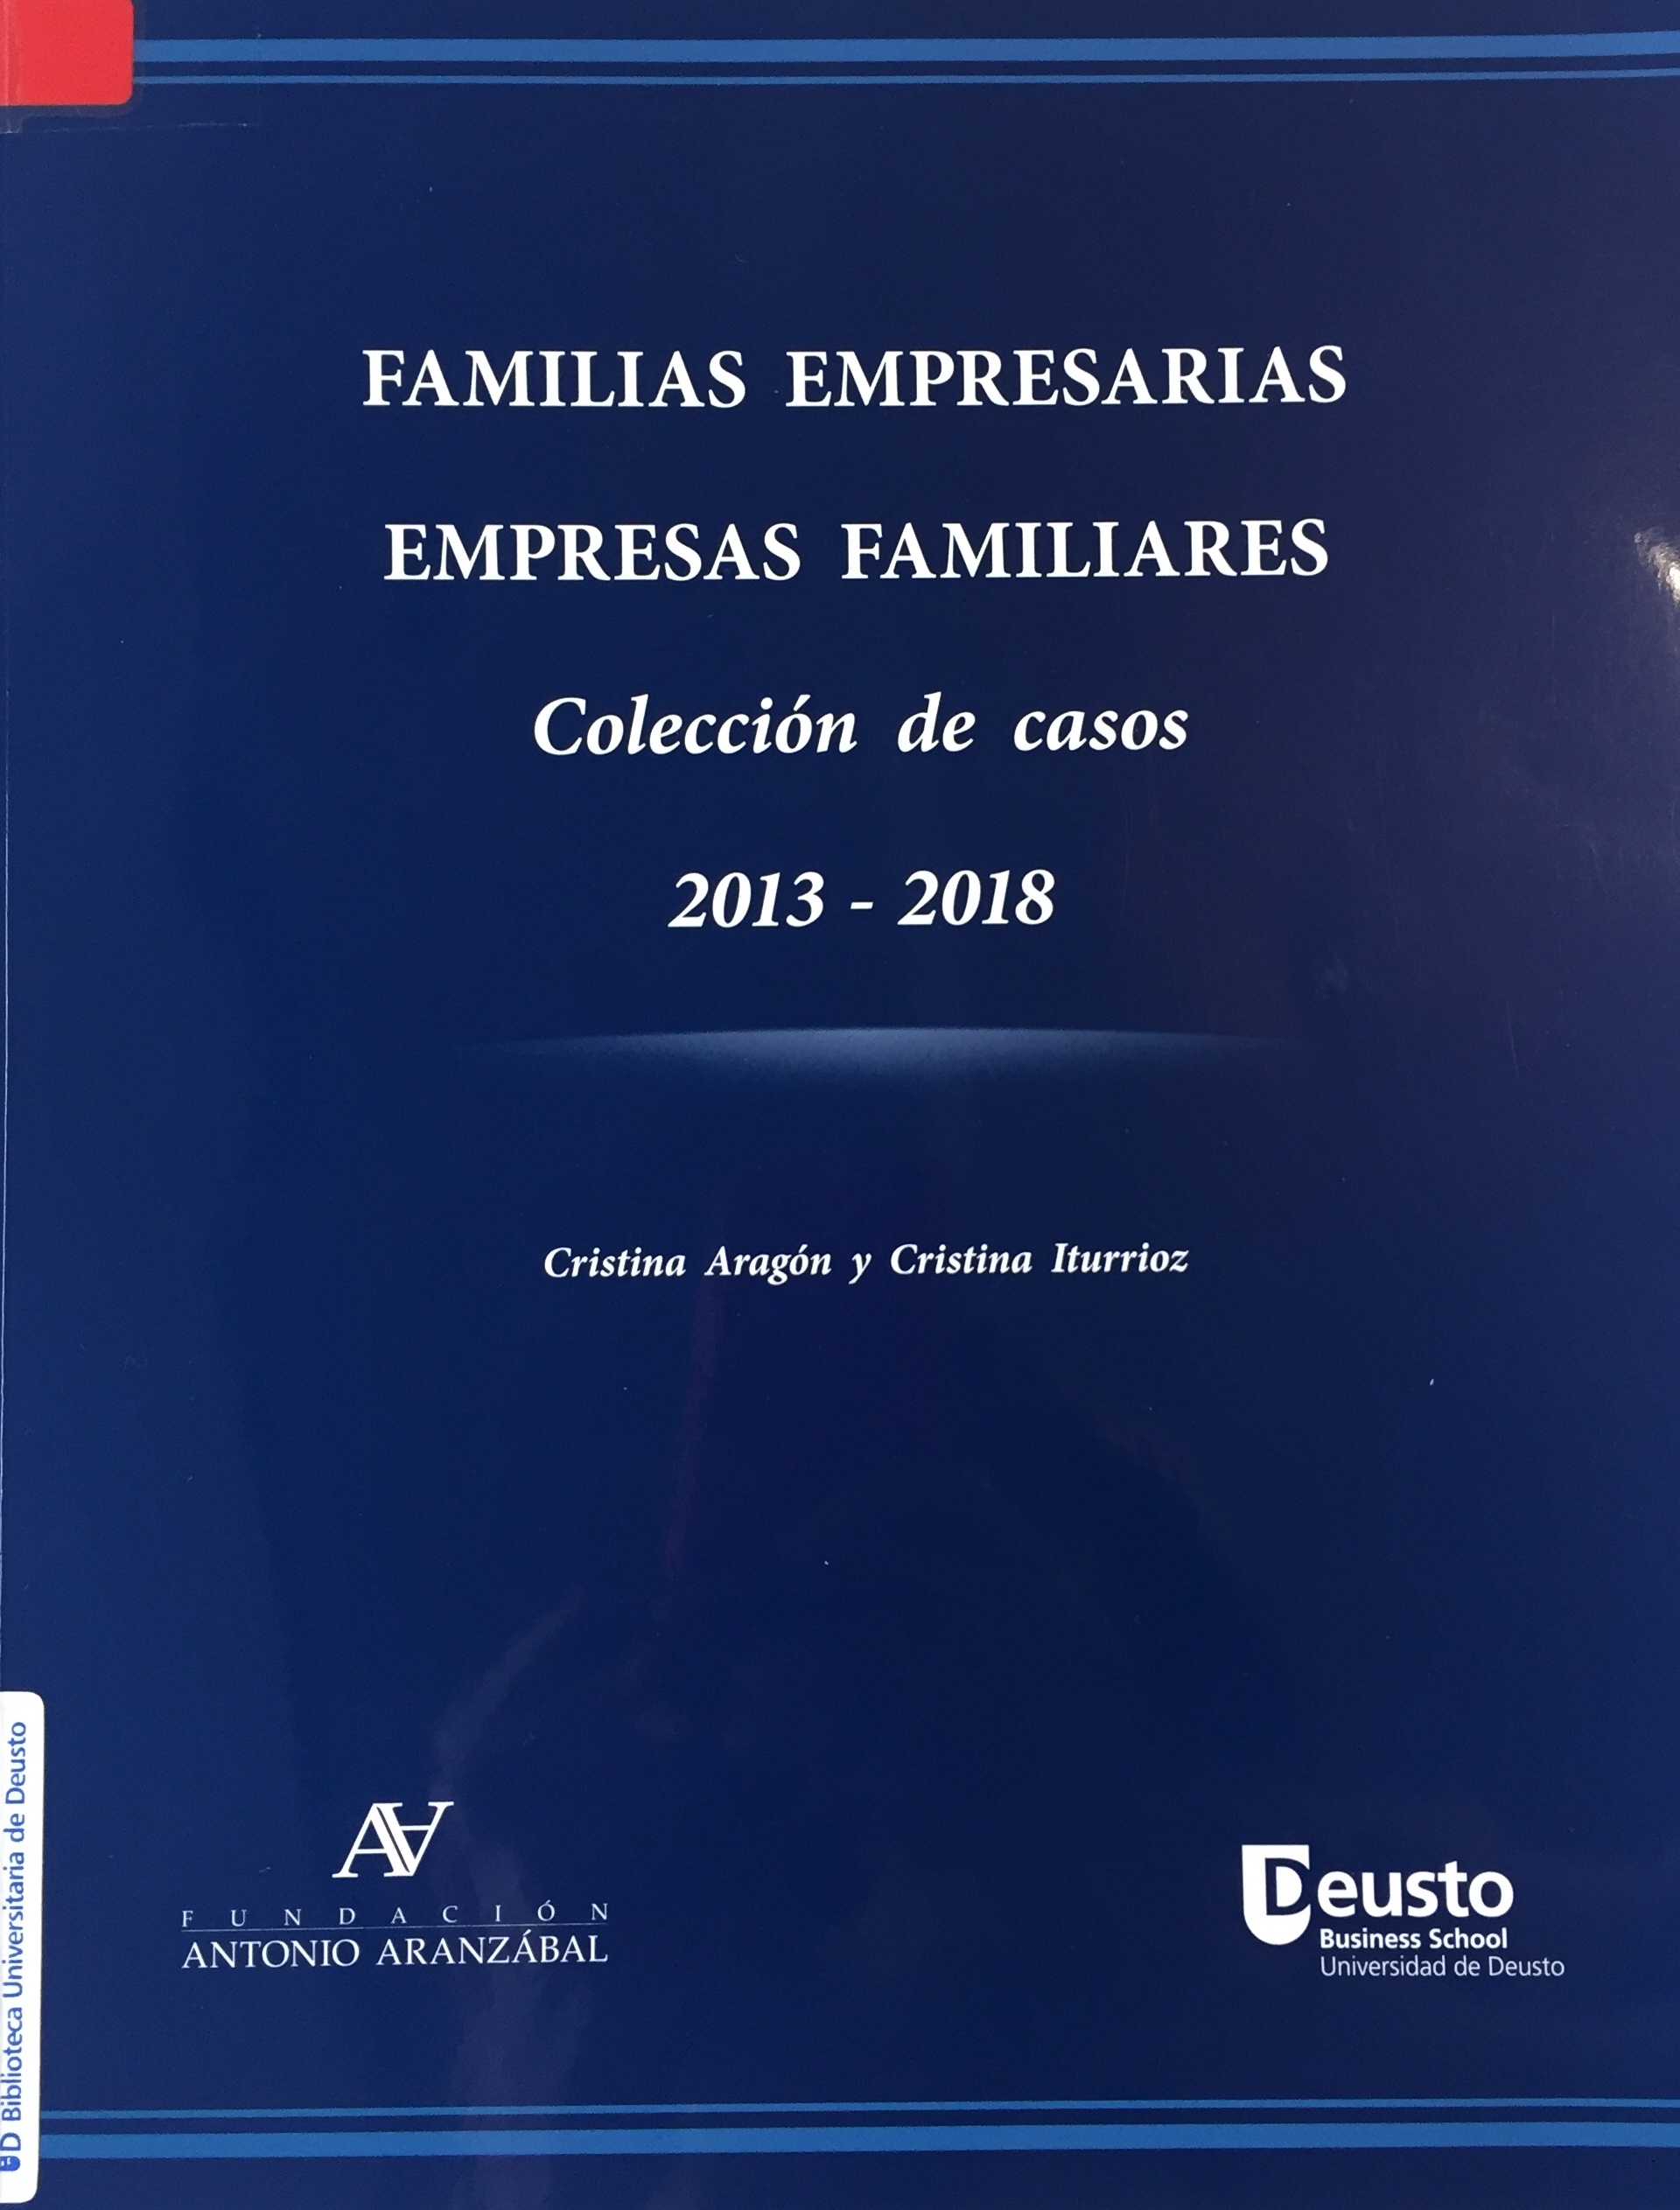 Imagen de portada del libro Familias empresarias, empresas familiares